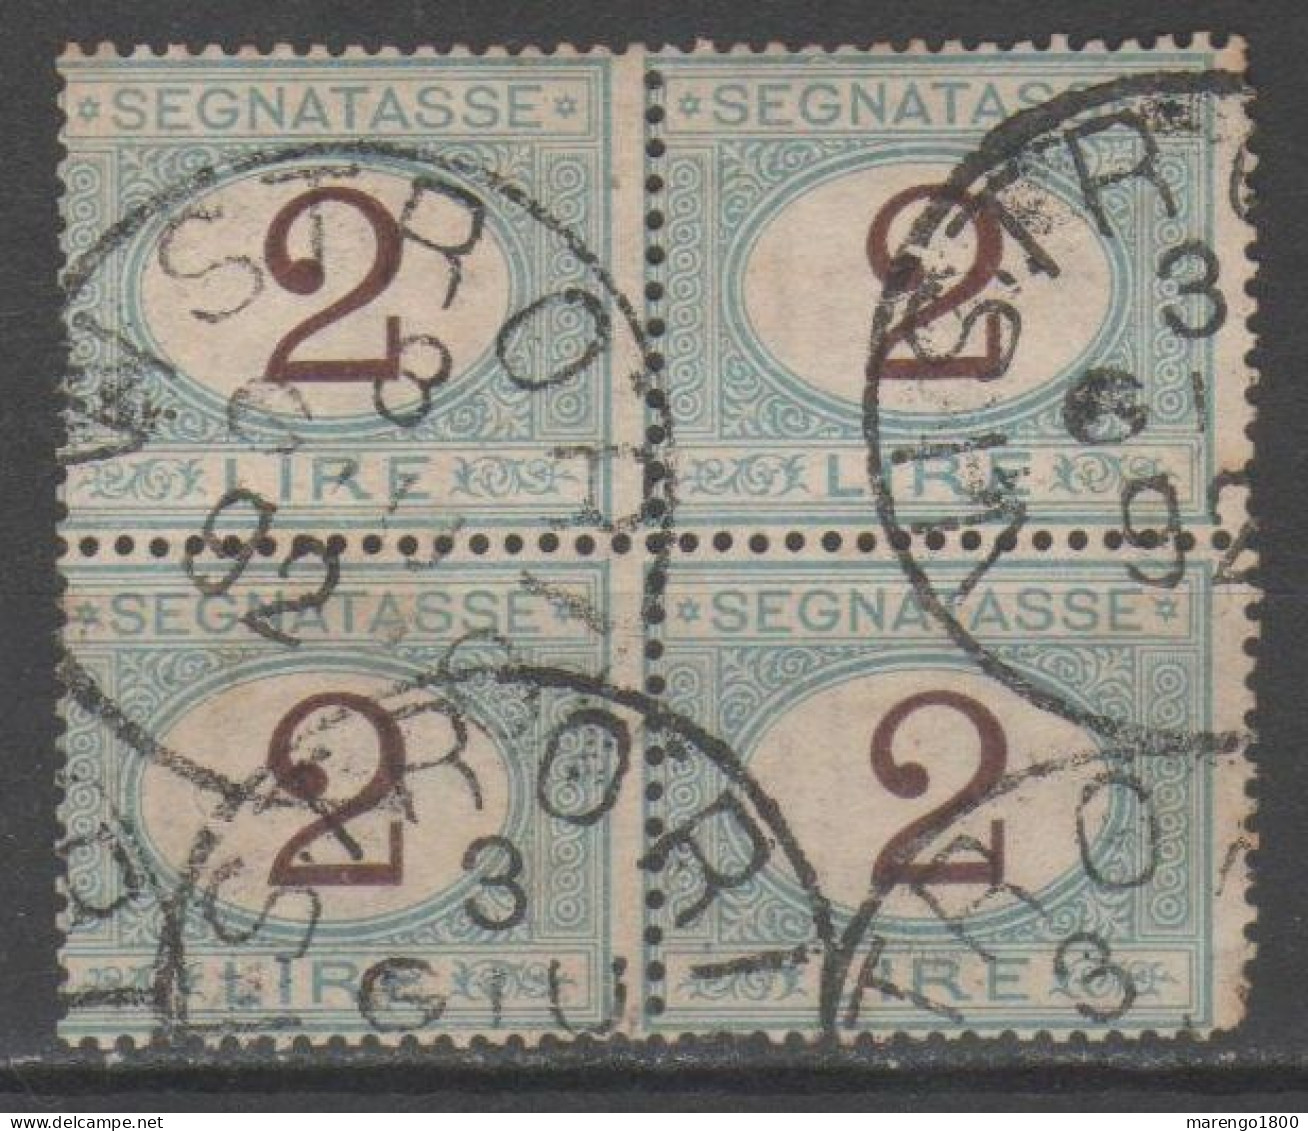 ITALIA 1870 - Segnatasse 2 L. Quartina          (g9392) - Segnatasse